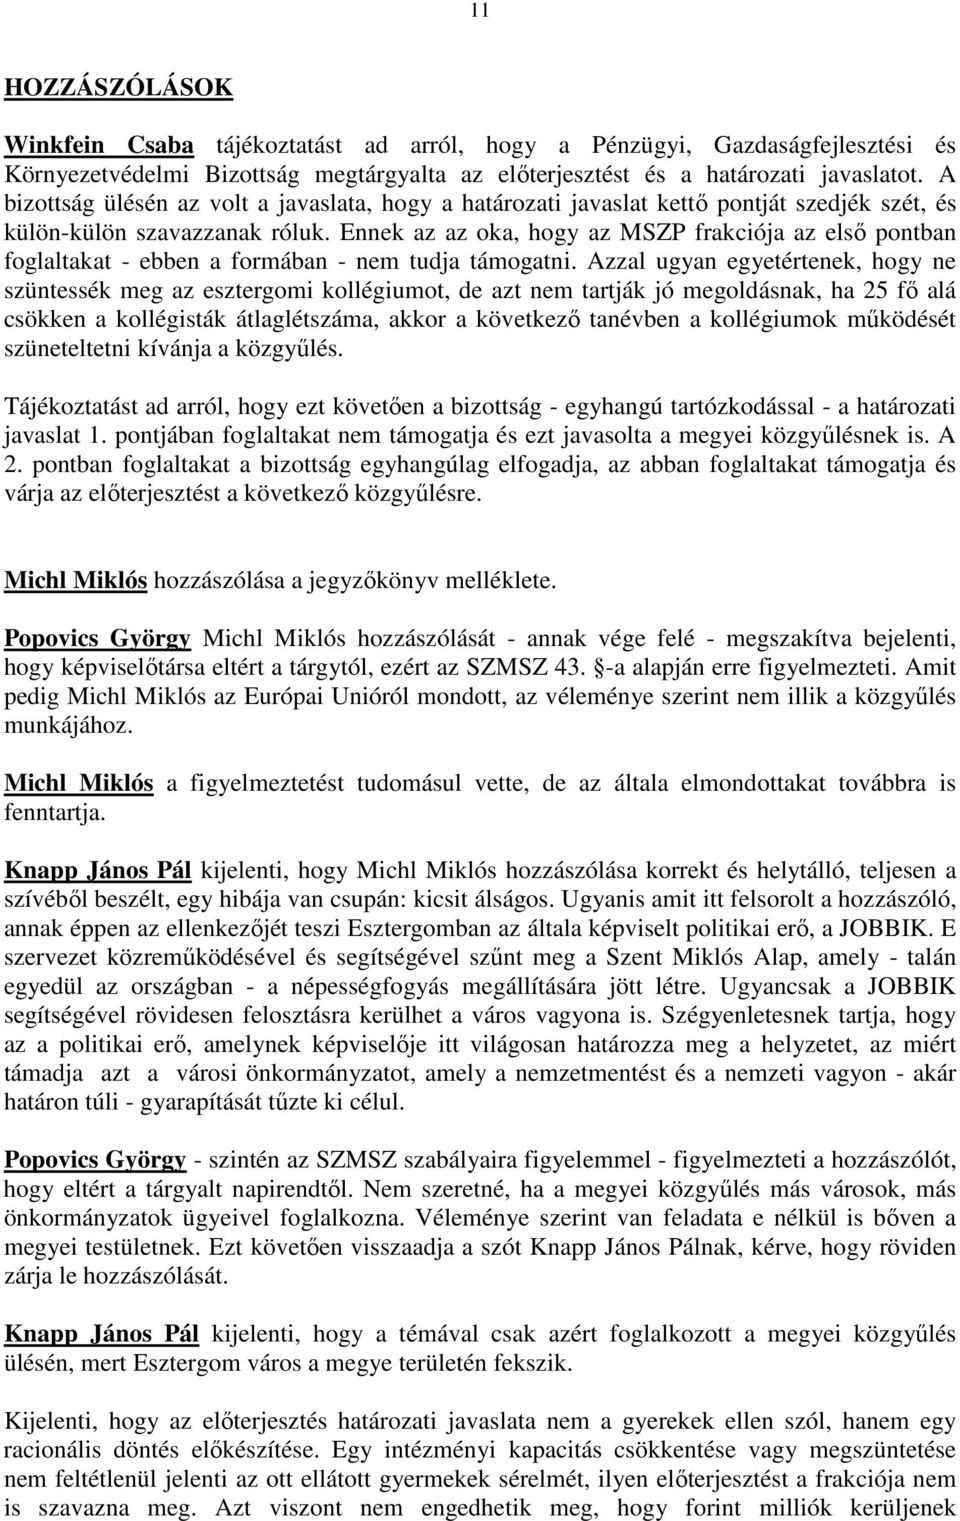 Ennek az az oka, hogy az MSZP frakciója az elsı pontban foglaltakat - ebben a formában - nem tudja támogatni.